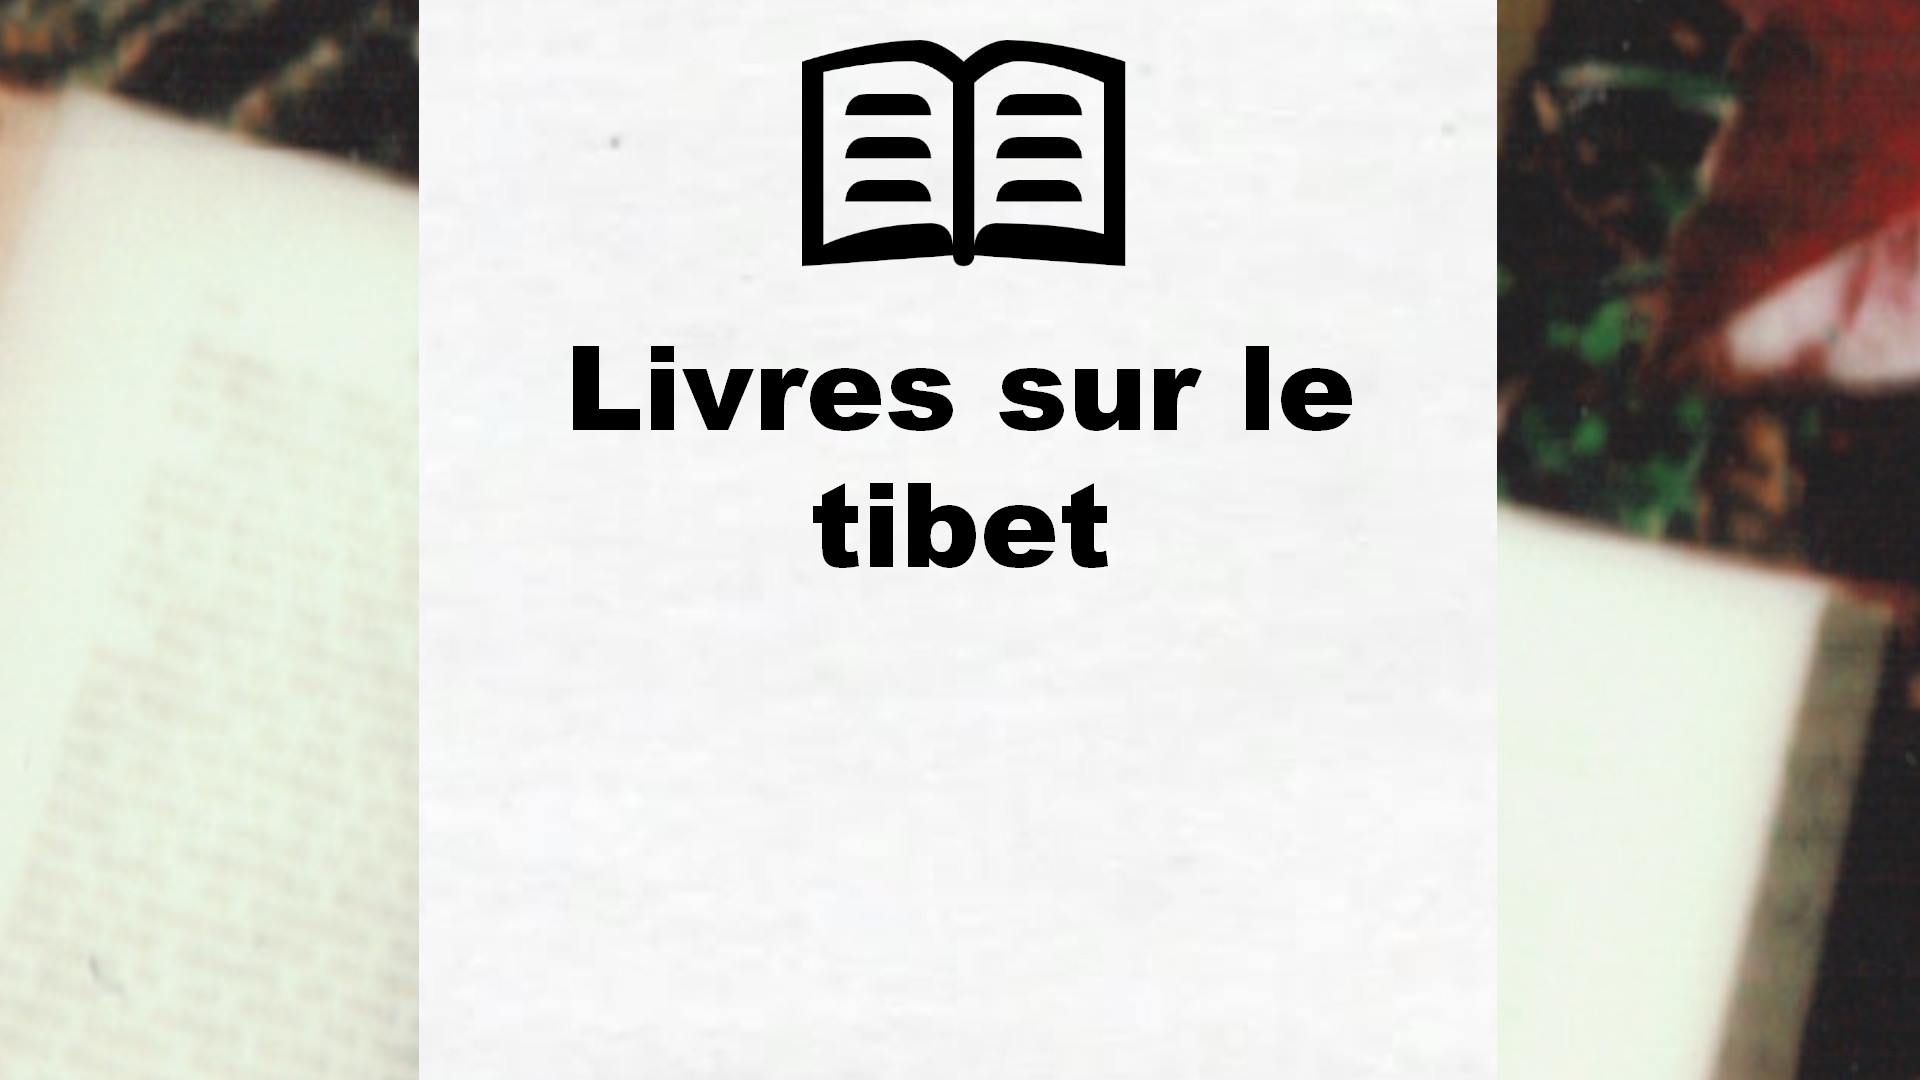 Livres sur le tibet